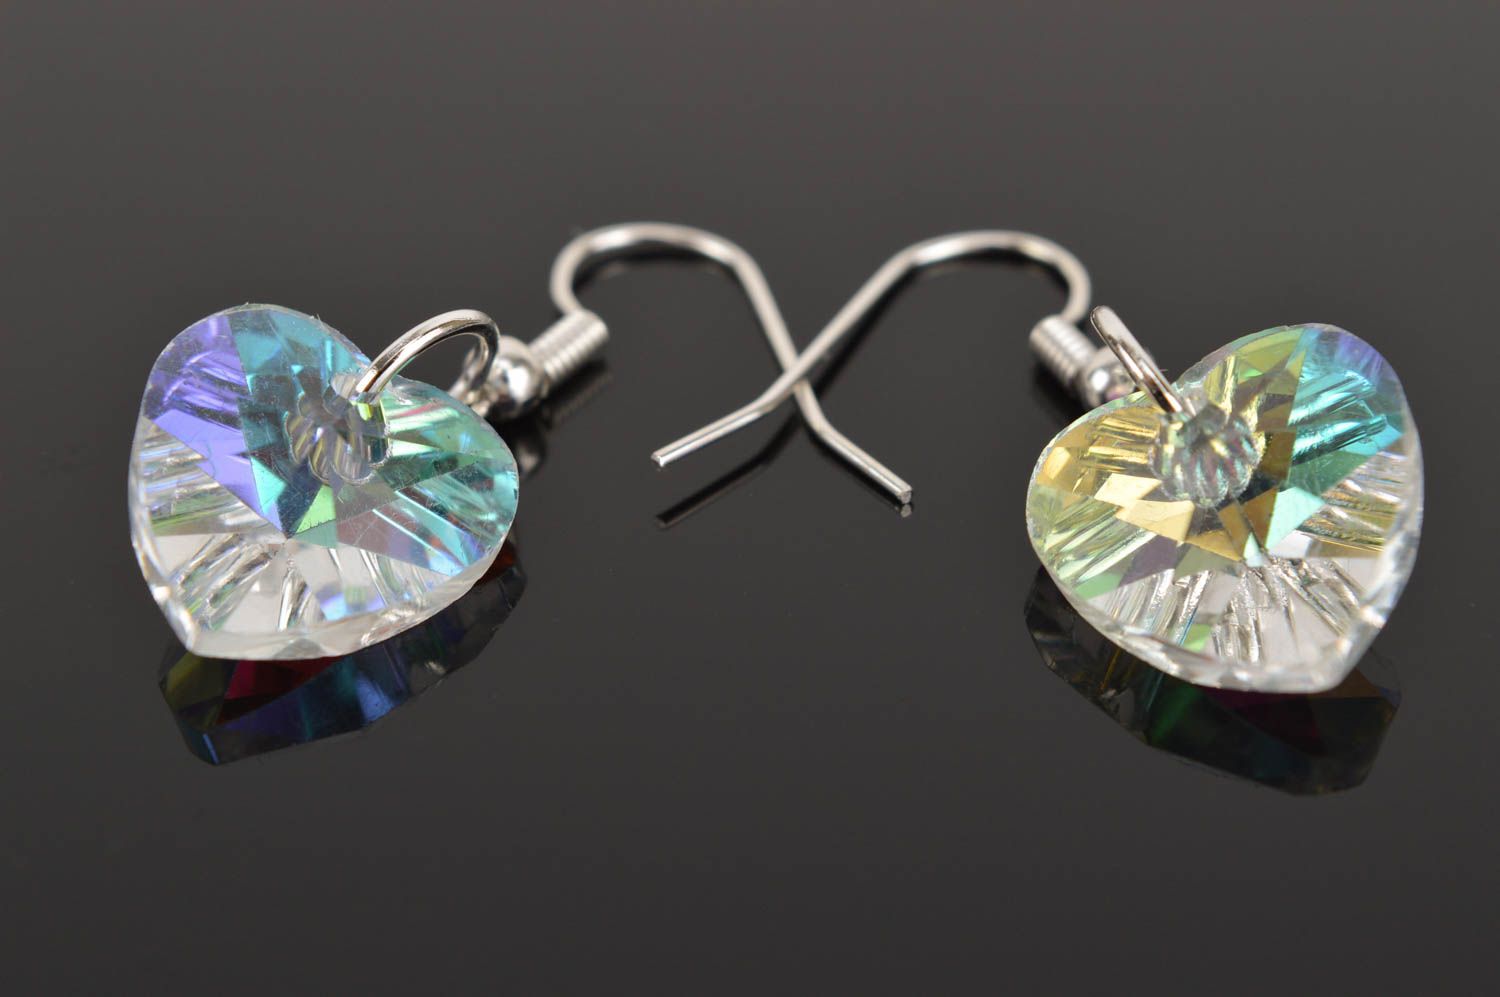 Handmade earrings designer jewelry glass earrings unusual accessory gift ideas photo 5